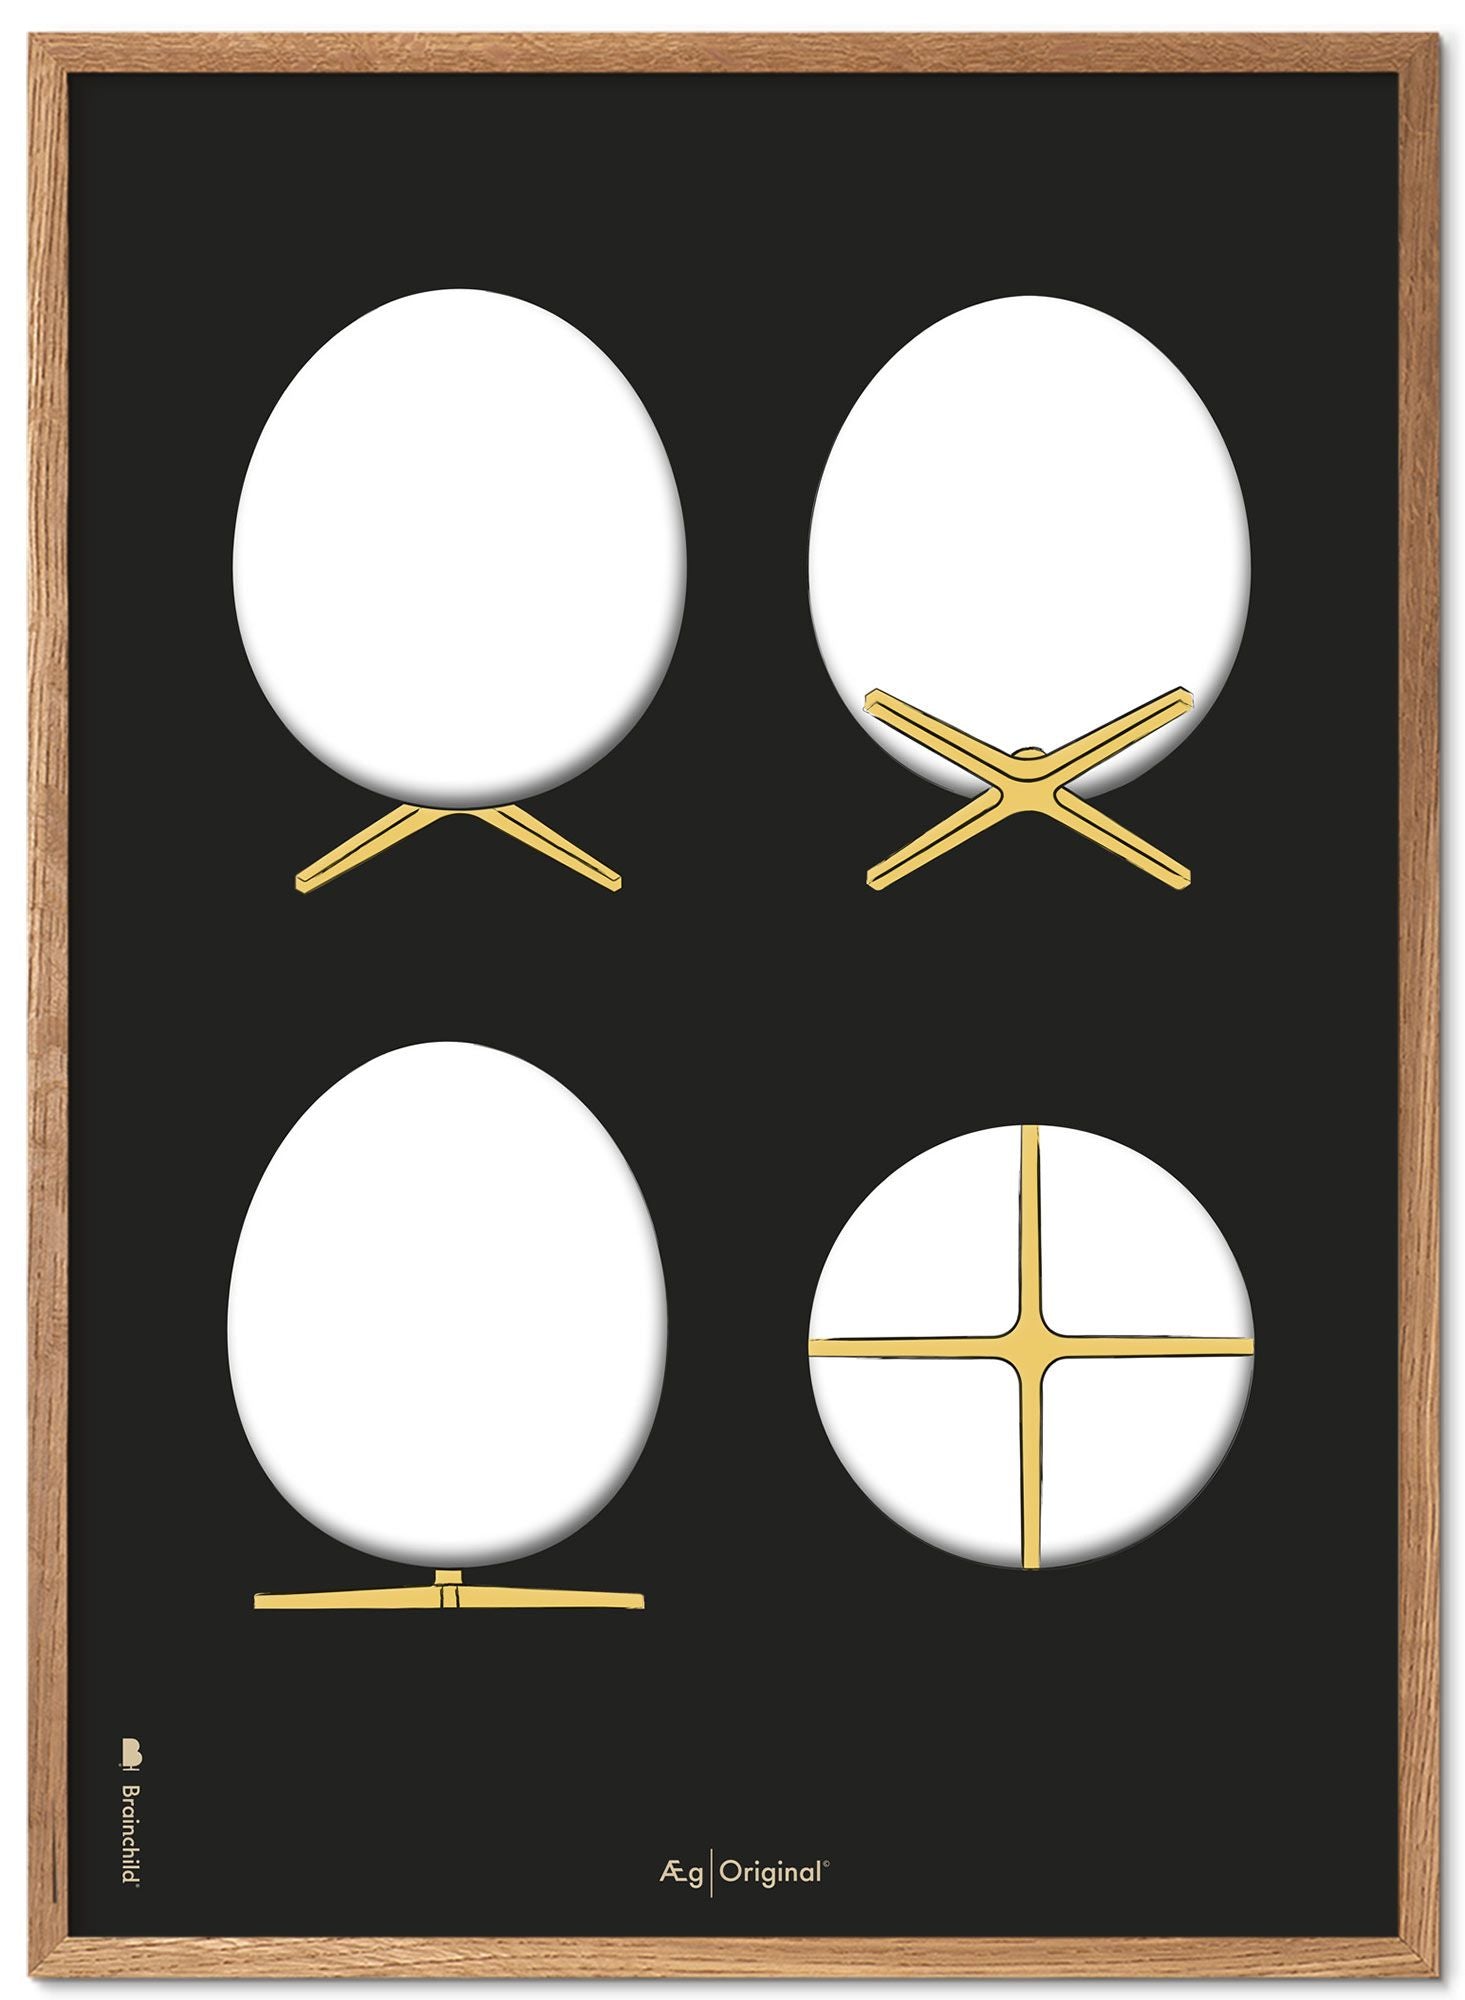 Brainchild Cadre pour affiche The Egg Design Sketches, en bois clair, 30x40 Cm, fond noir